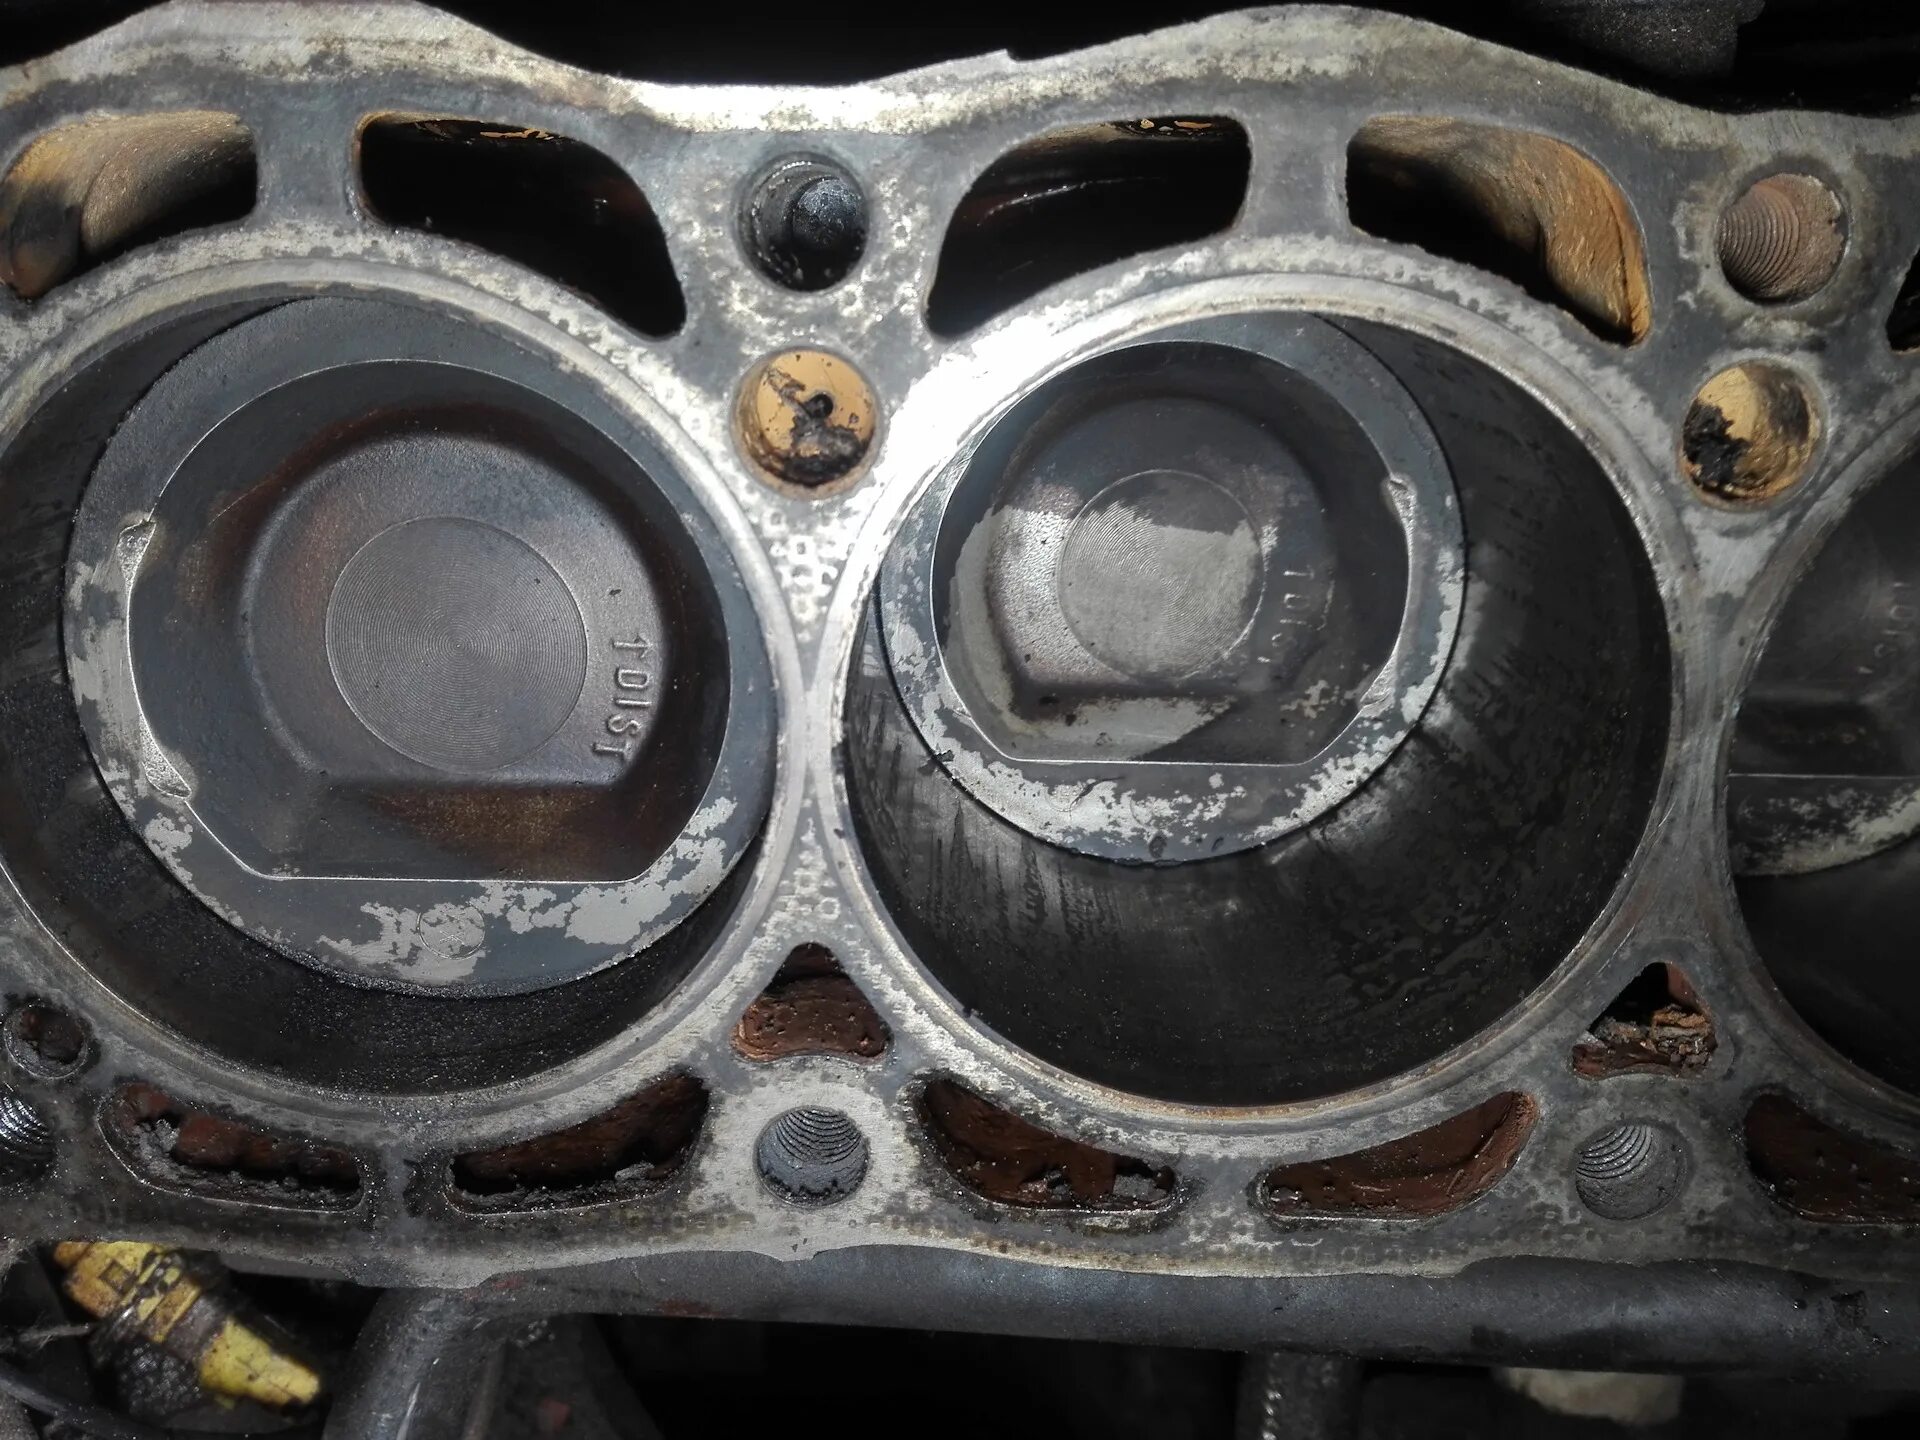 Загнуло клапана на Фольксваген поло 1,2. Гнет клапана x18xe. Opel Corsa d 1.4 гнет ли клапана. Hyundai Accent 2007 гнет ли клапана. На дизелях гнет клапана